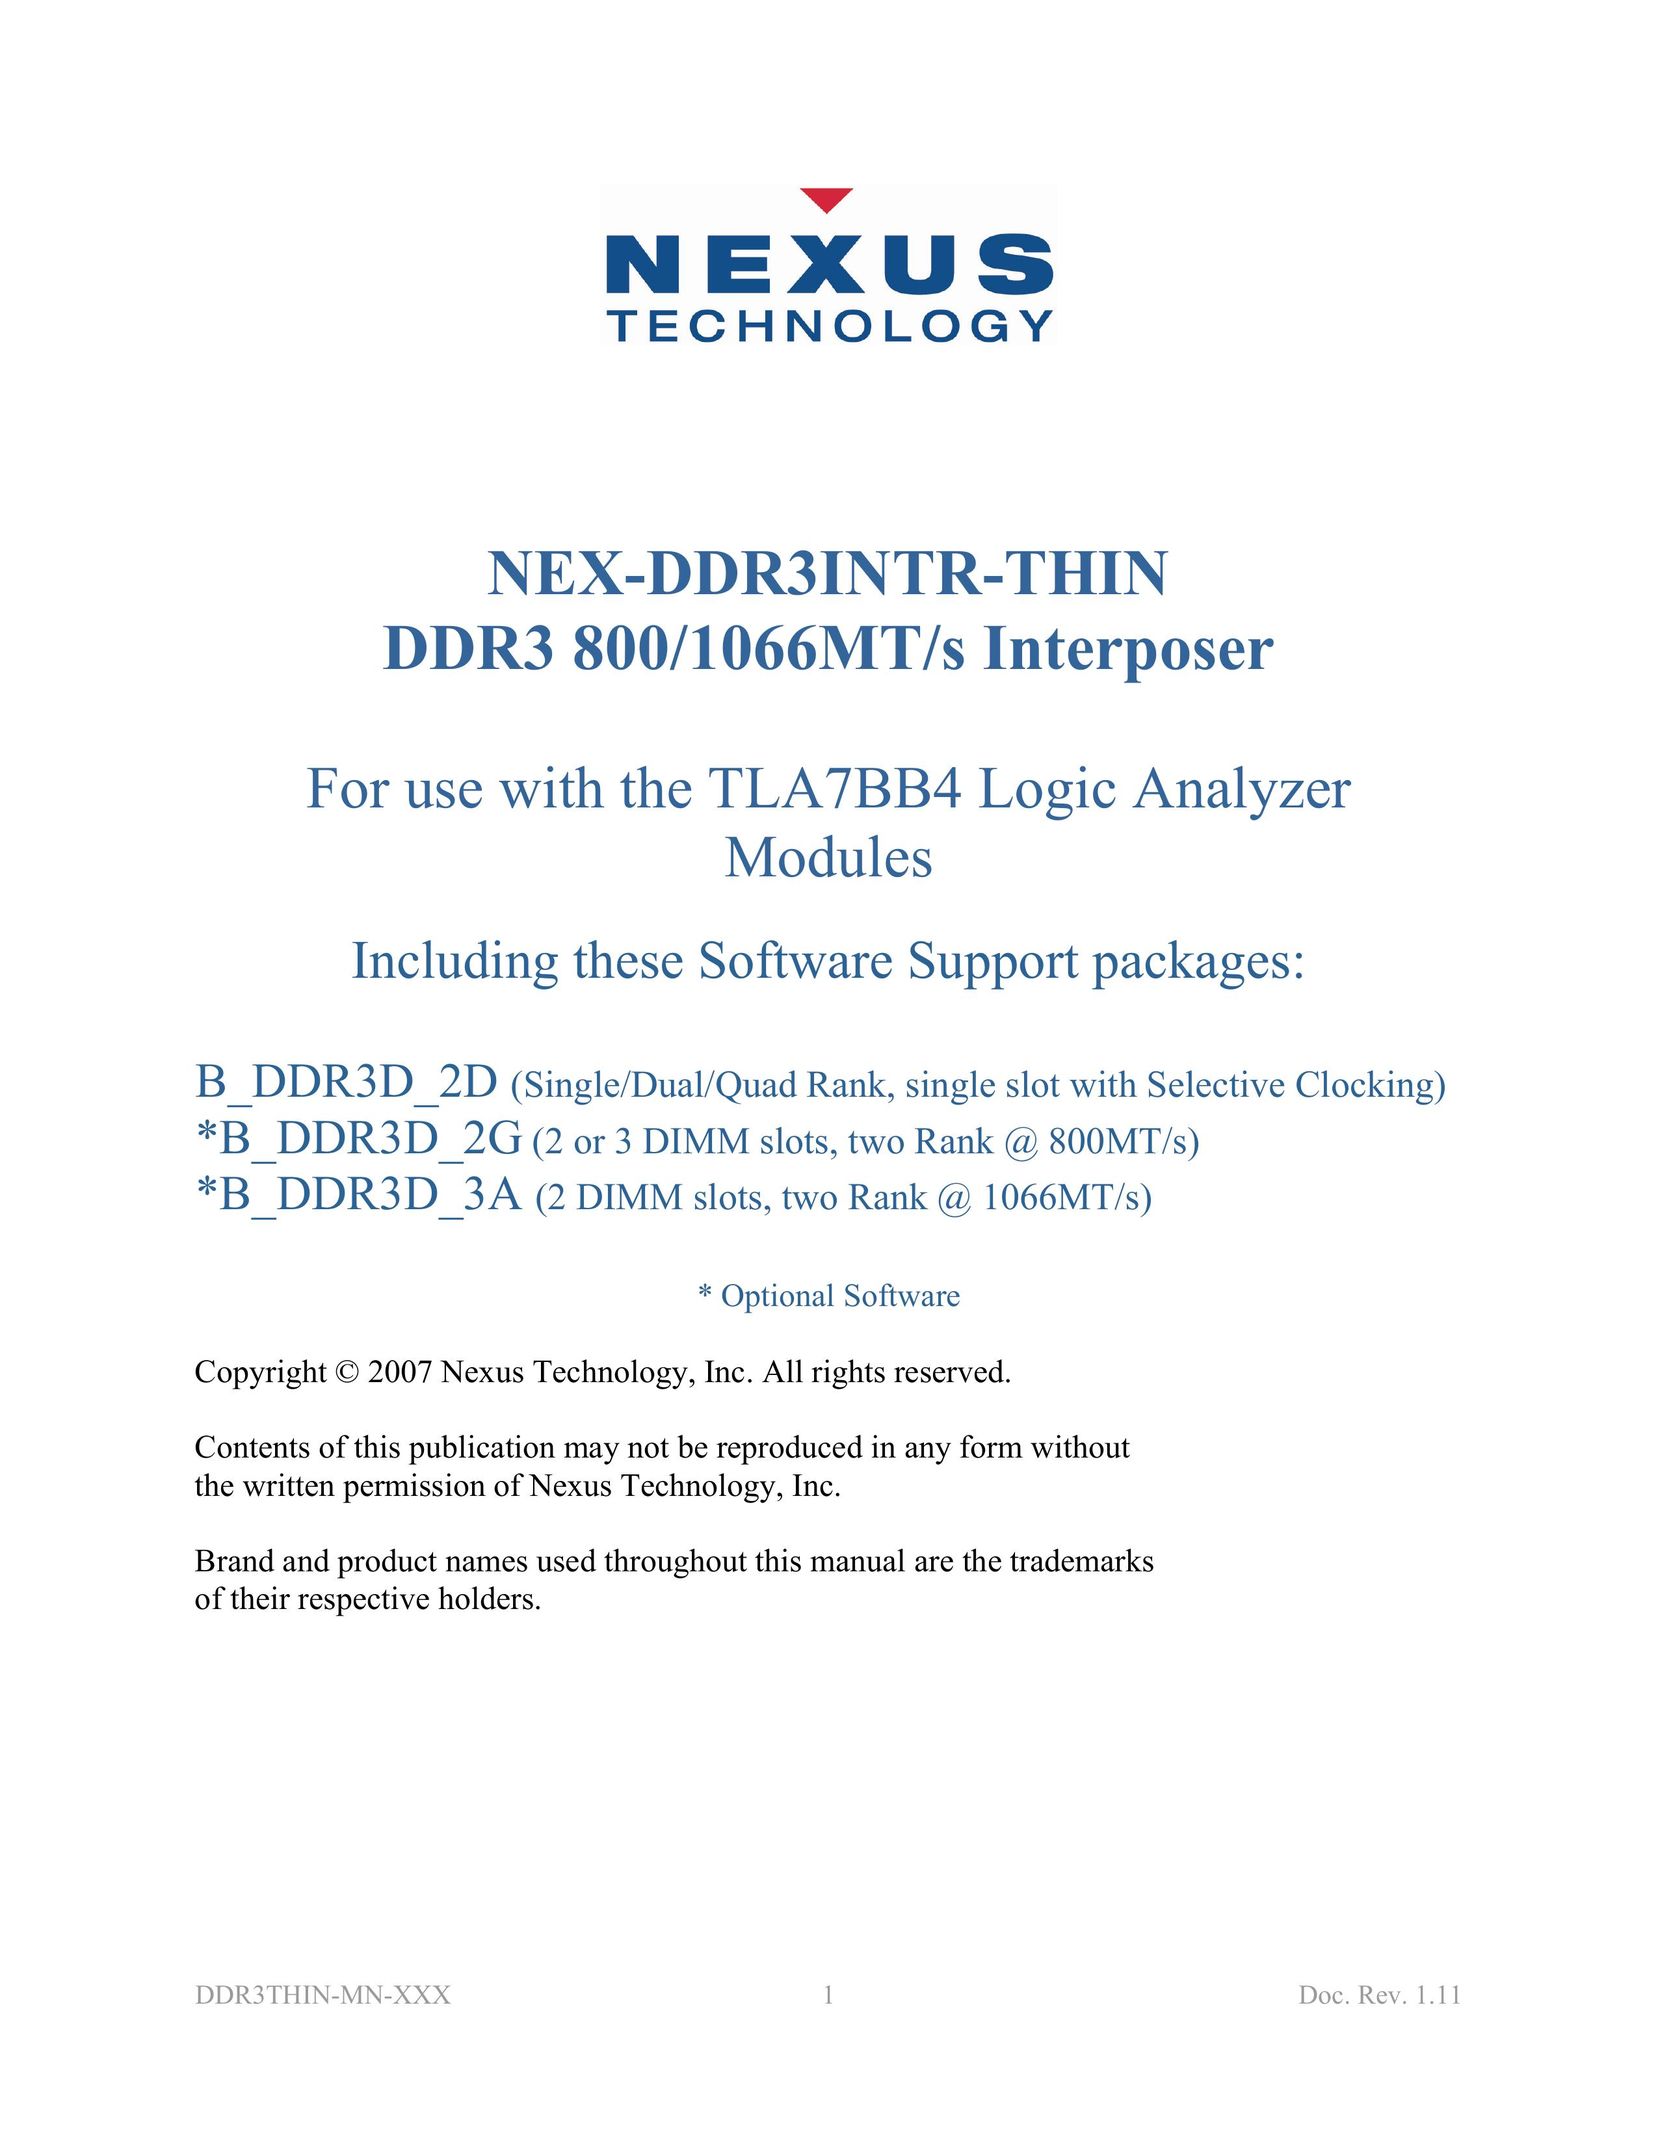 Nexus 21 DDR3 800 Computer Hardware User Manual